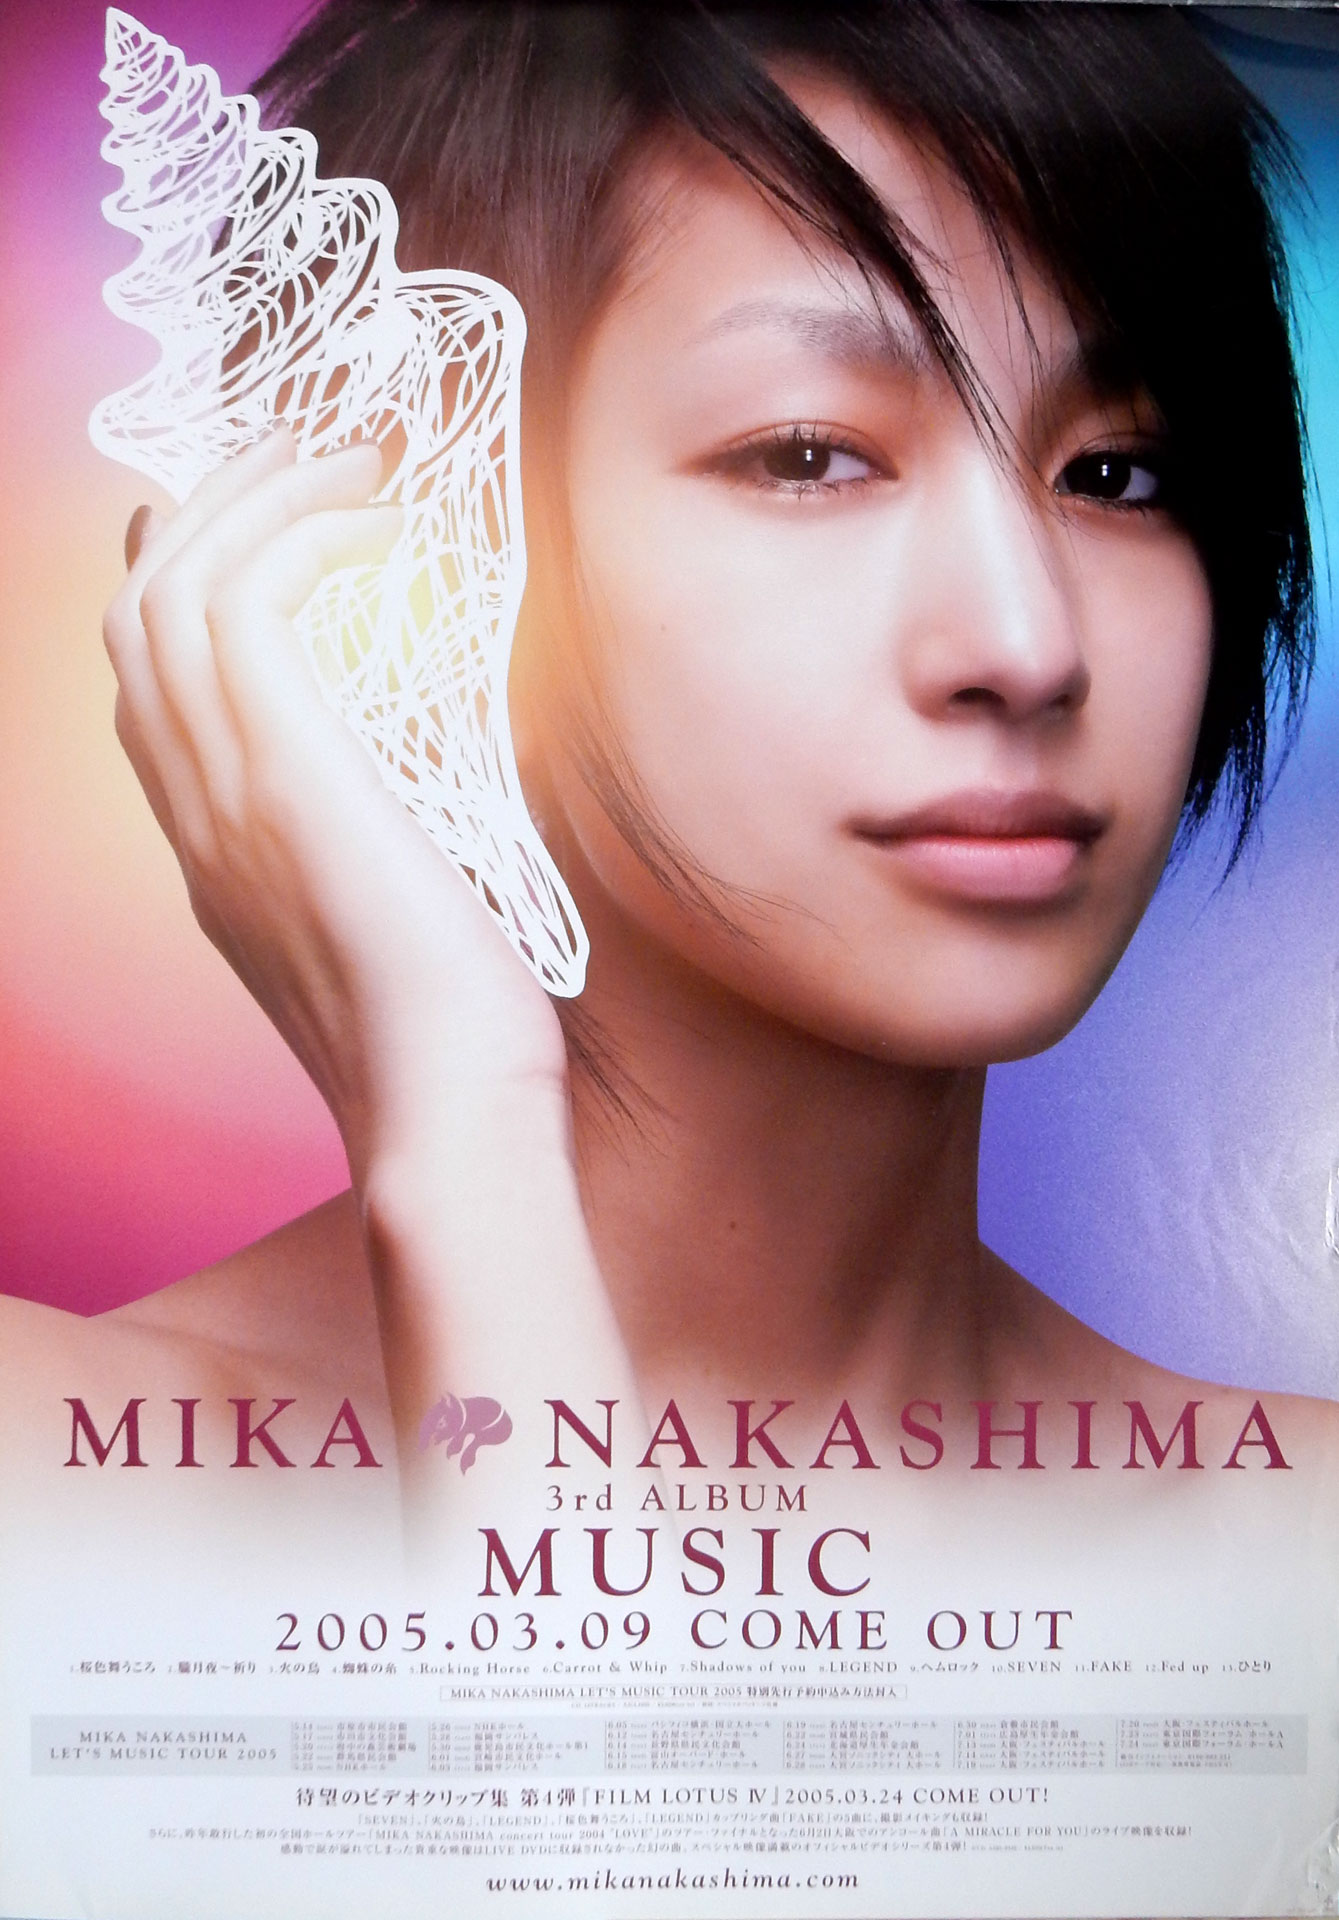 中島美嘉 「MUSIC」のポスター